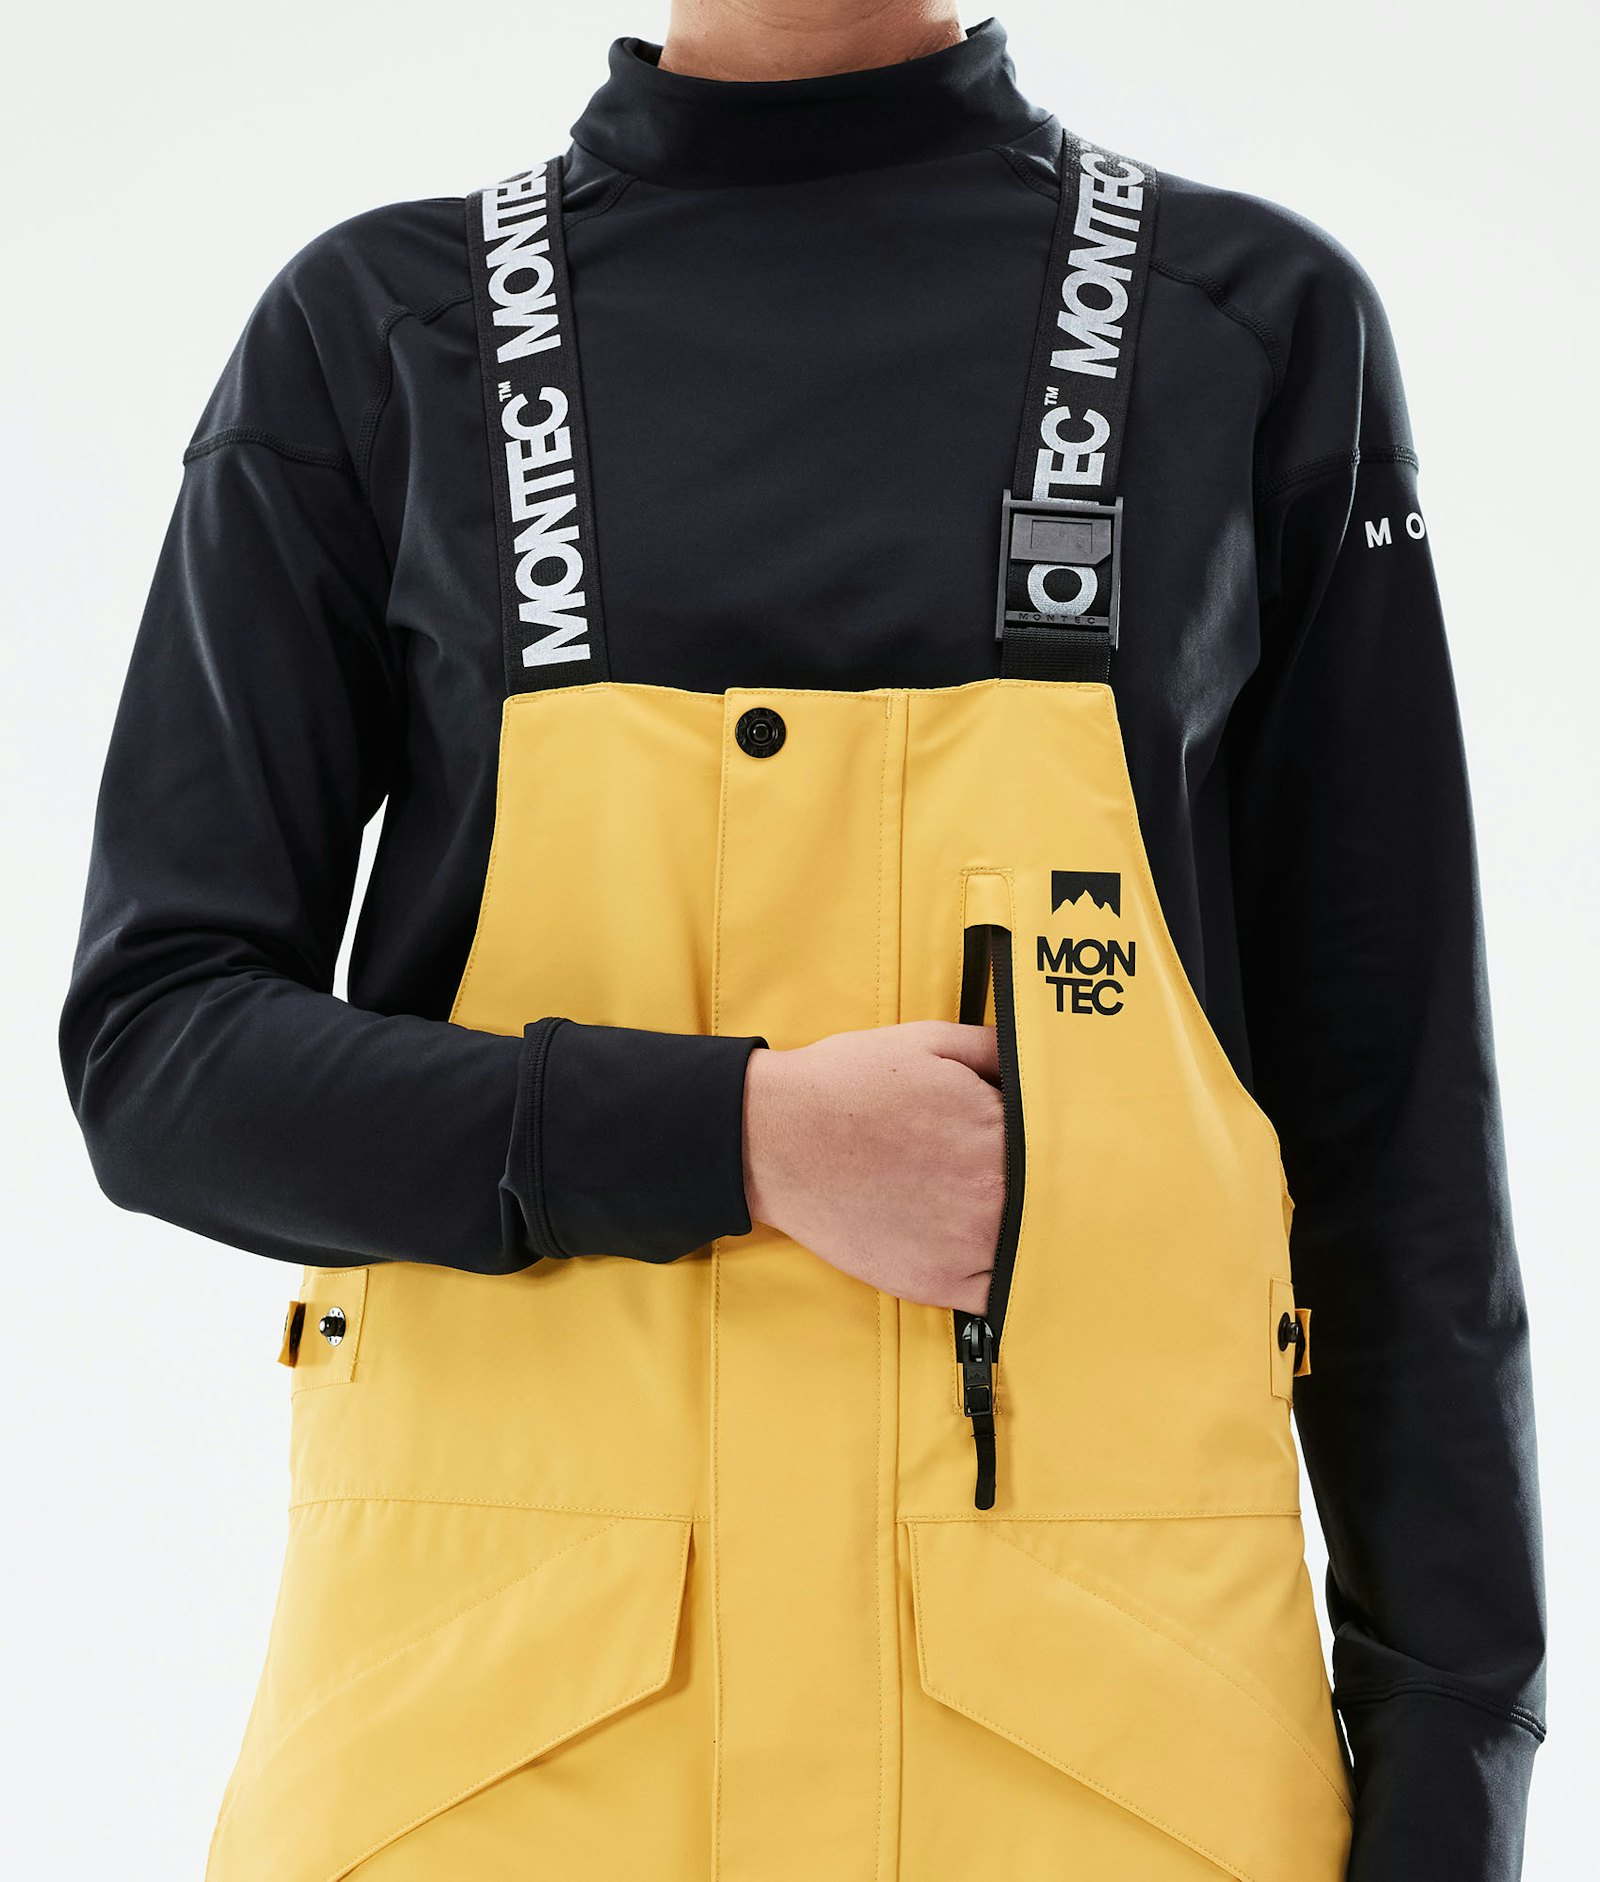 Fawk W 2021 Pantalon de Snowboard Femme Yellow/Black Renewed